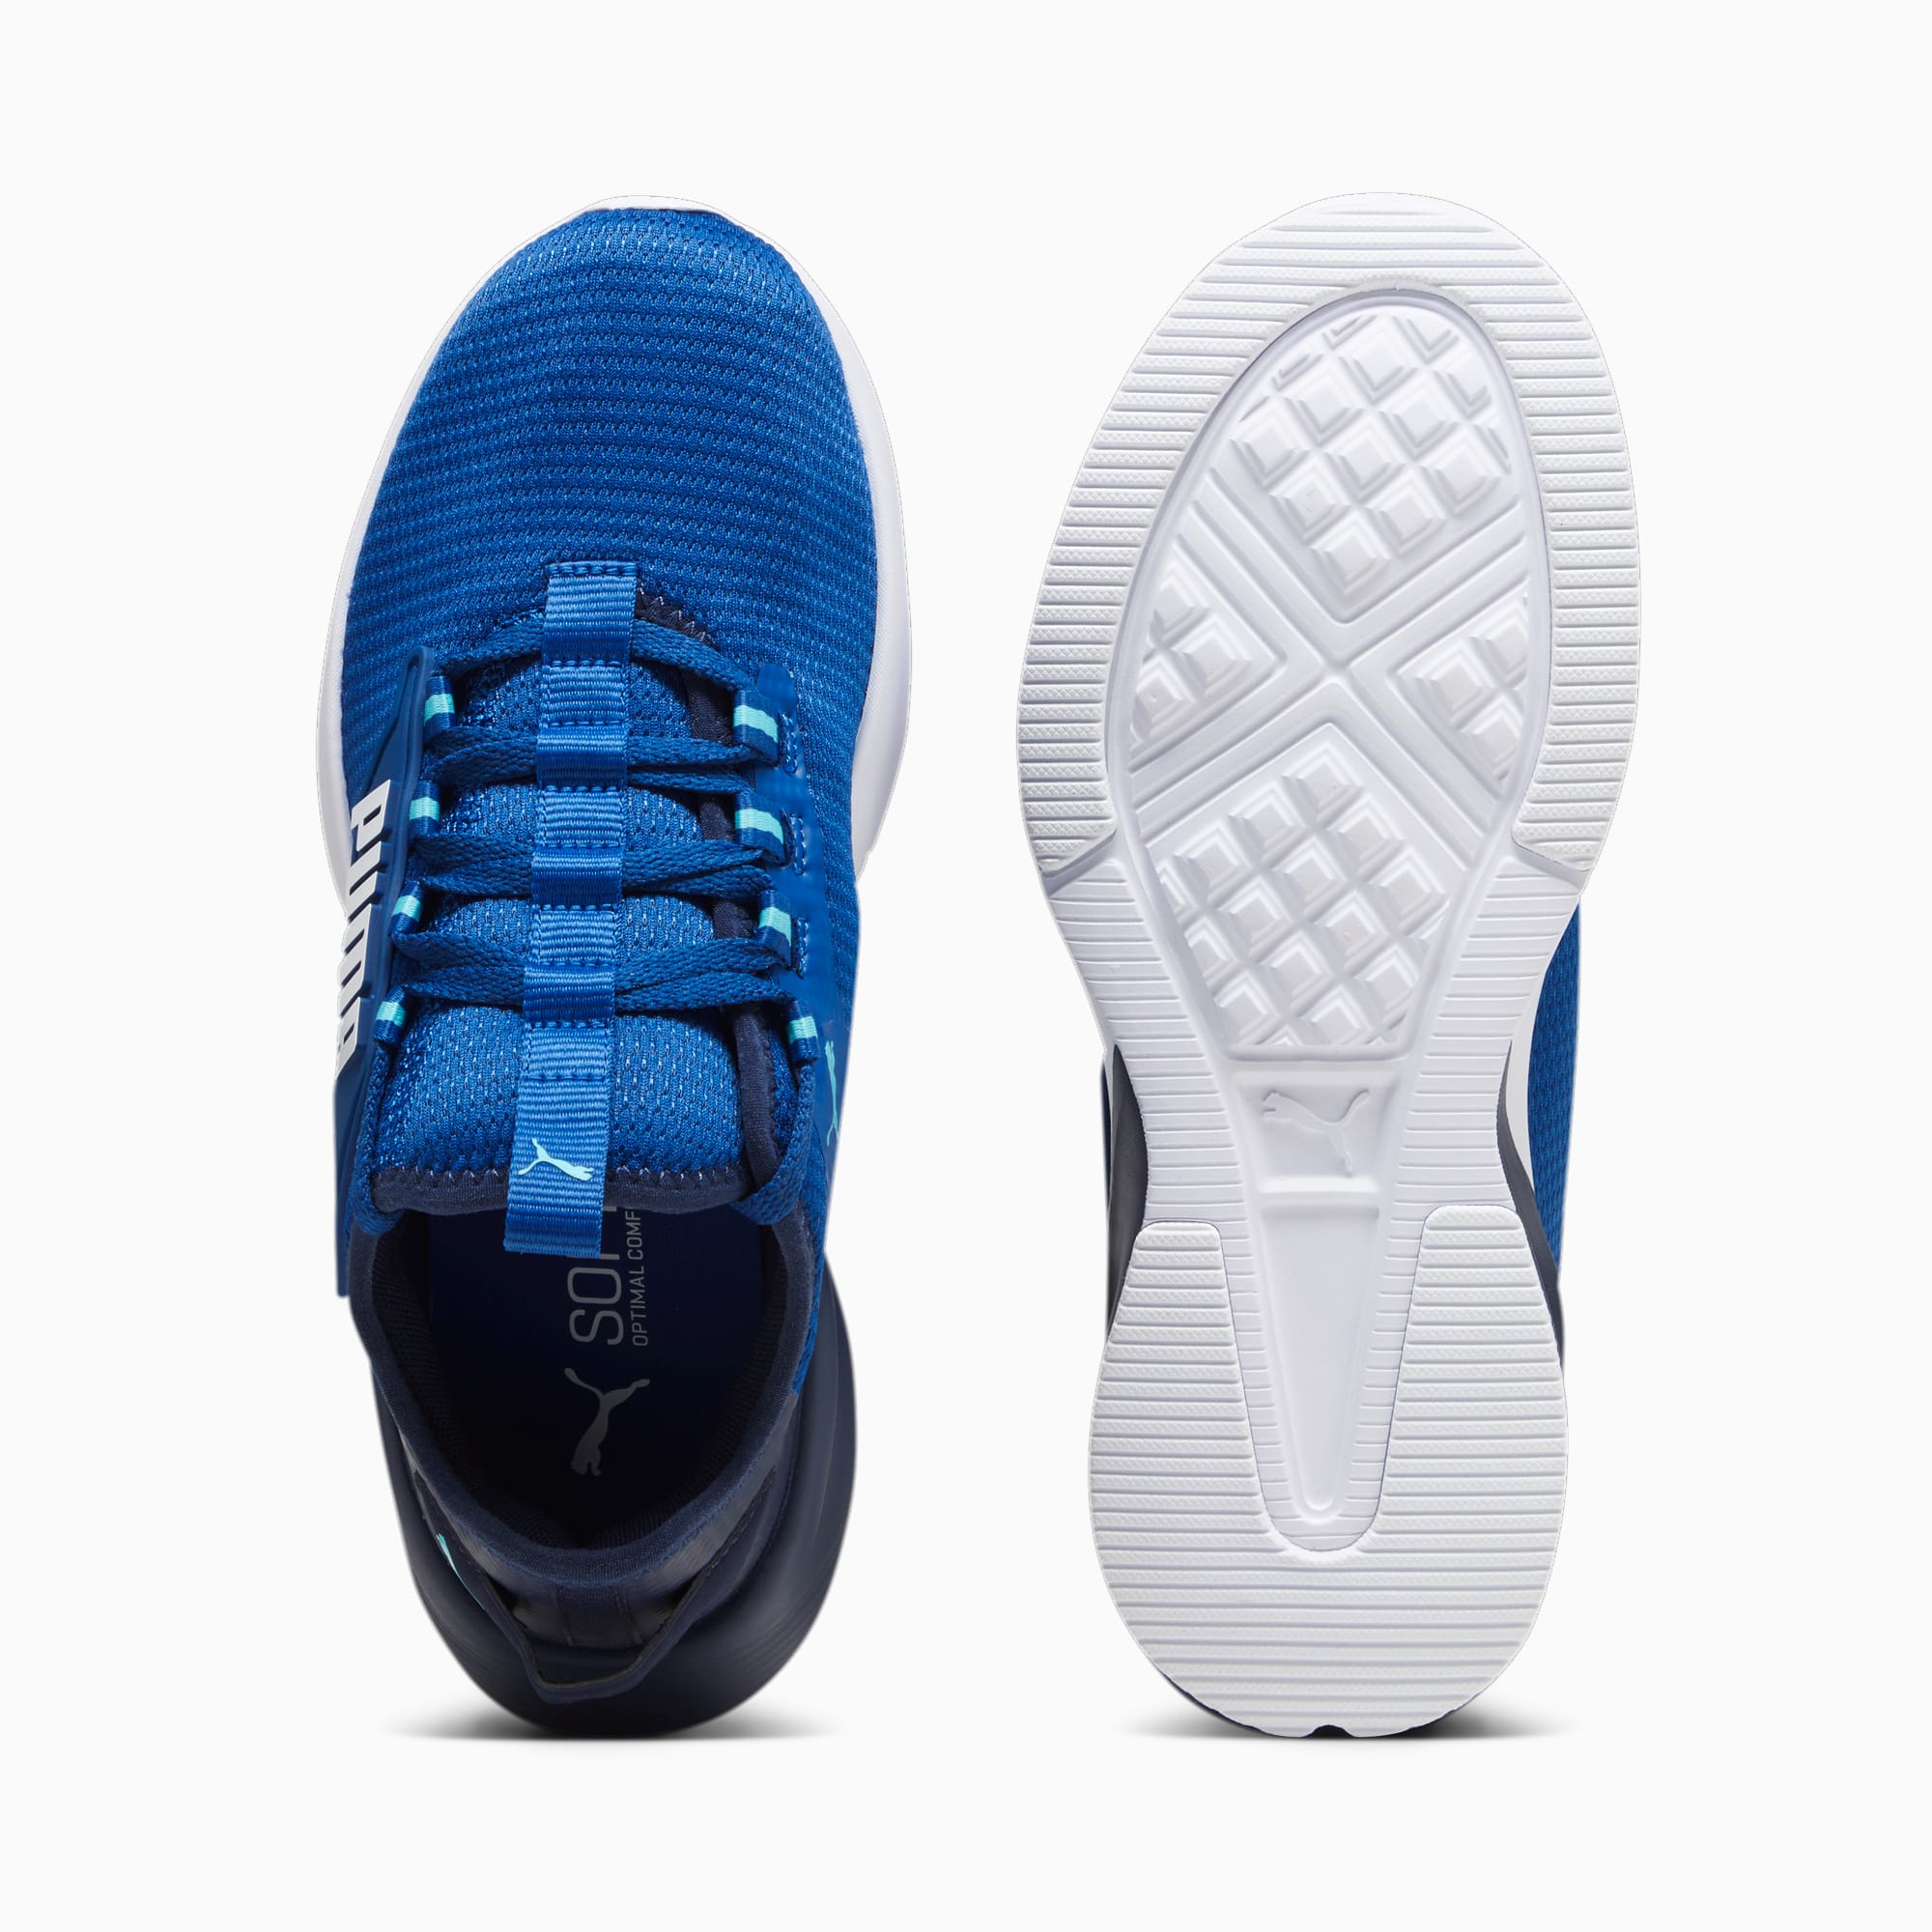 Scarpe Sneakers Retaliate 2 Da Ragazzo, Blu/Bianco/Altro